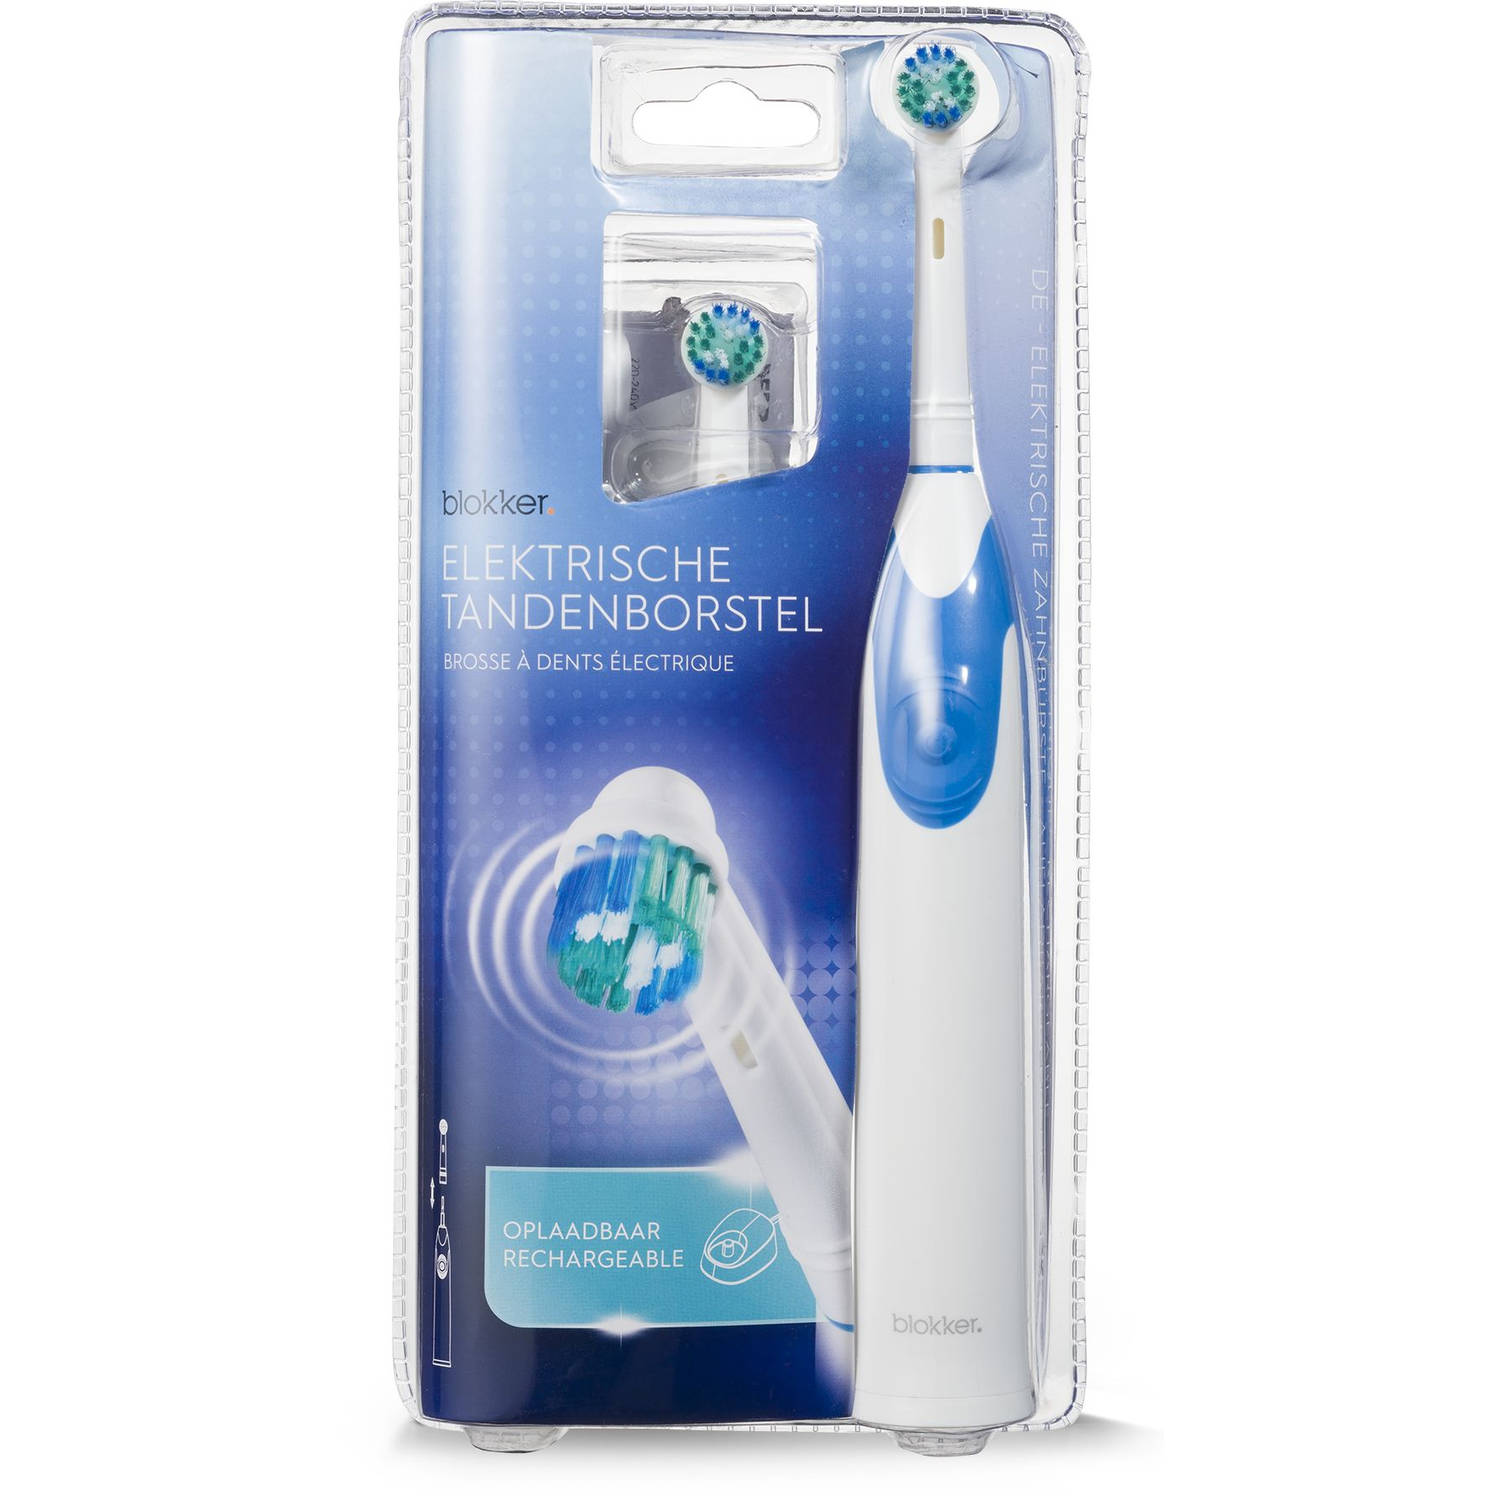 Metropolitan boete welvaart Blokker elektrische tandenborstel BL-19002 | Blokker